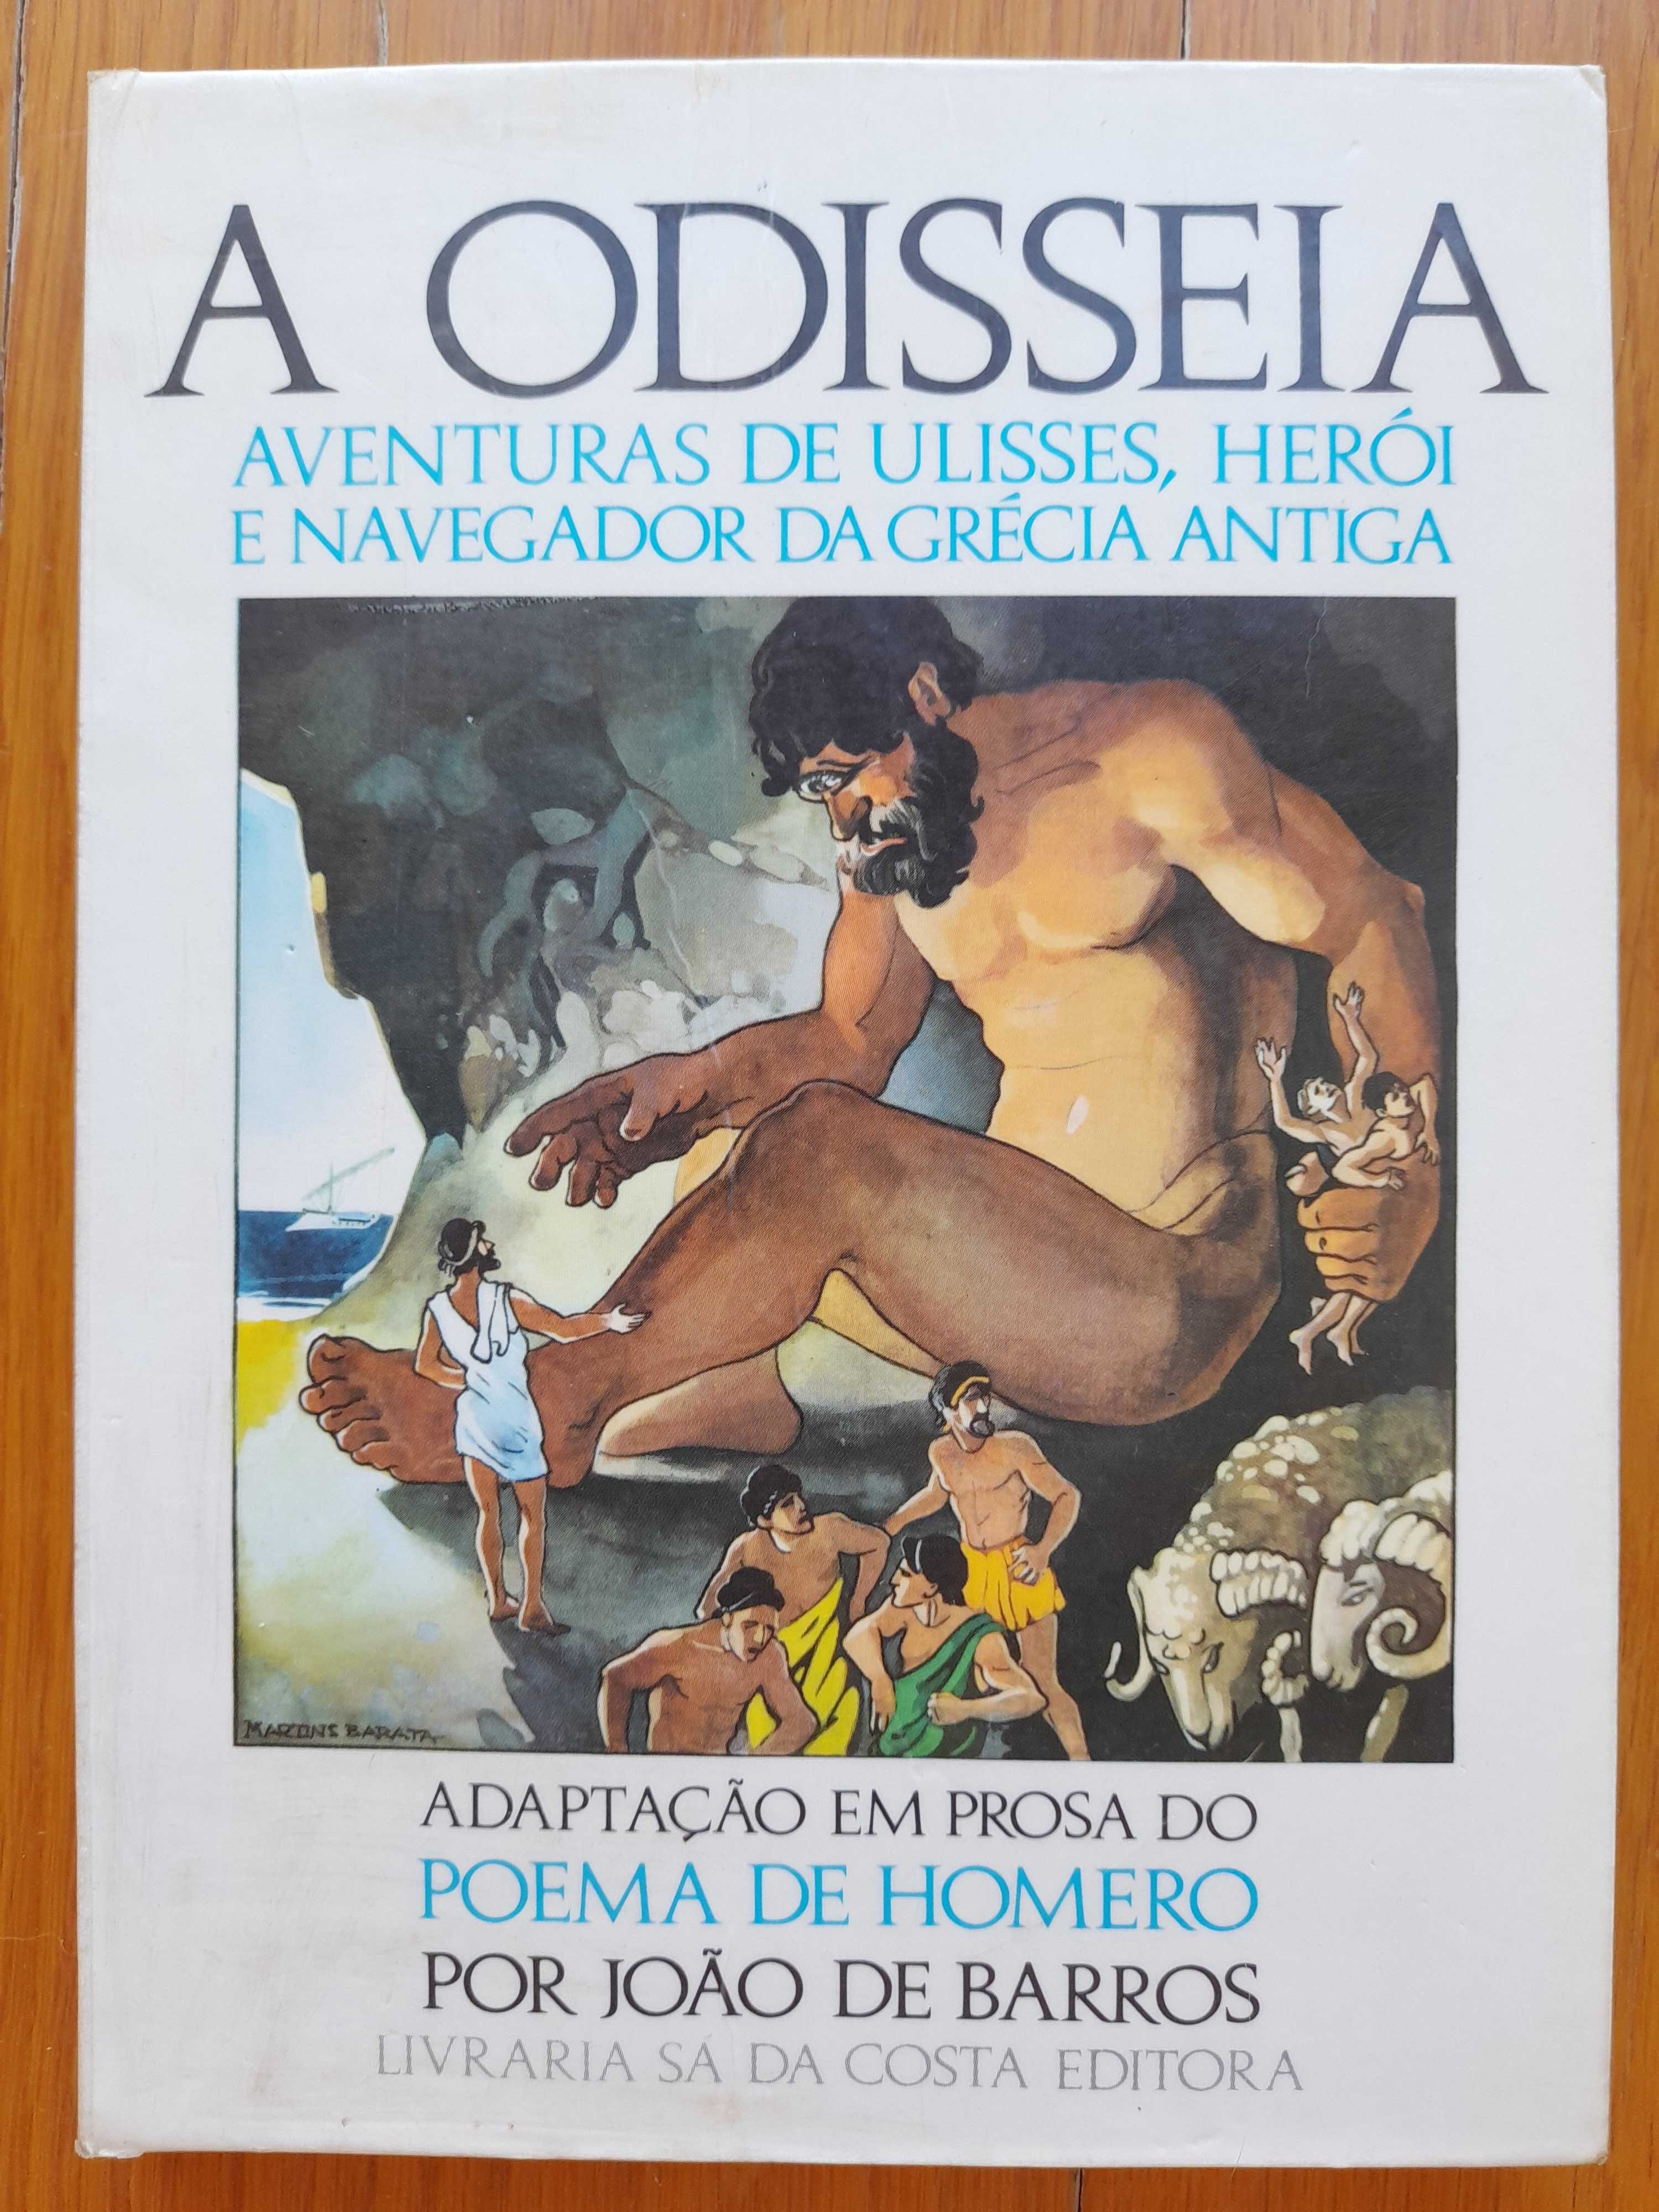 A Odisseia - Aventuras de Ulisses (adaptação em prosa)